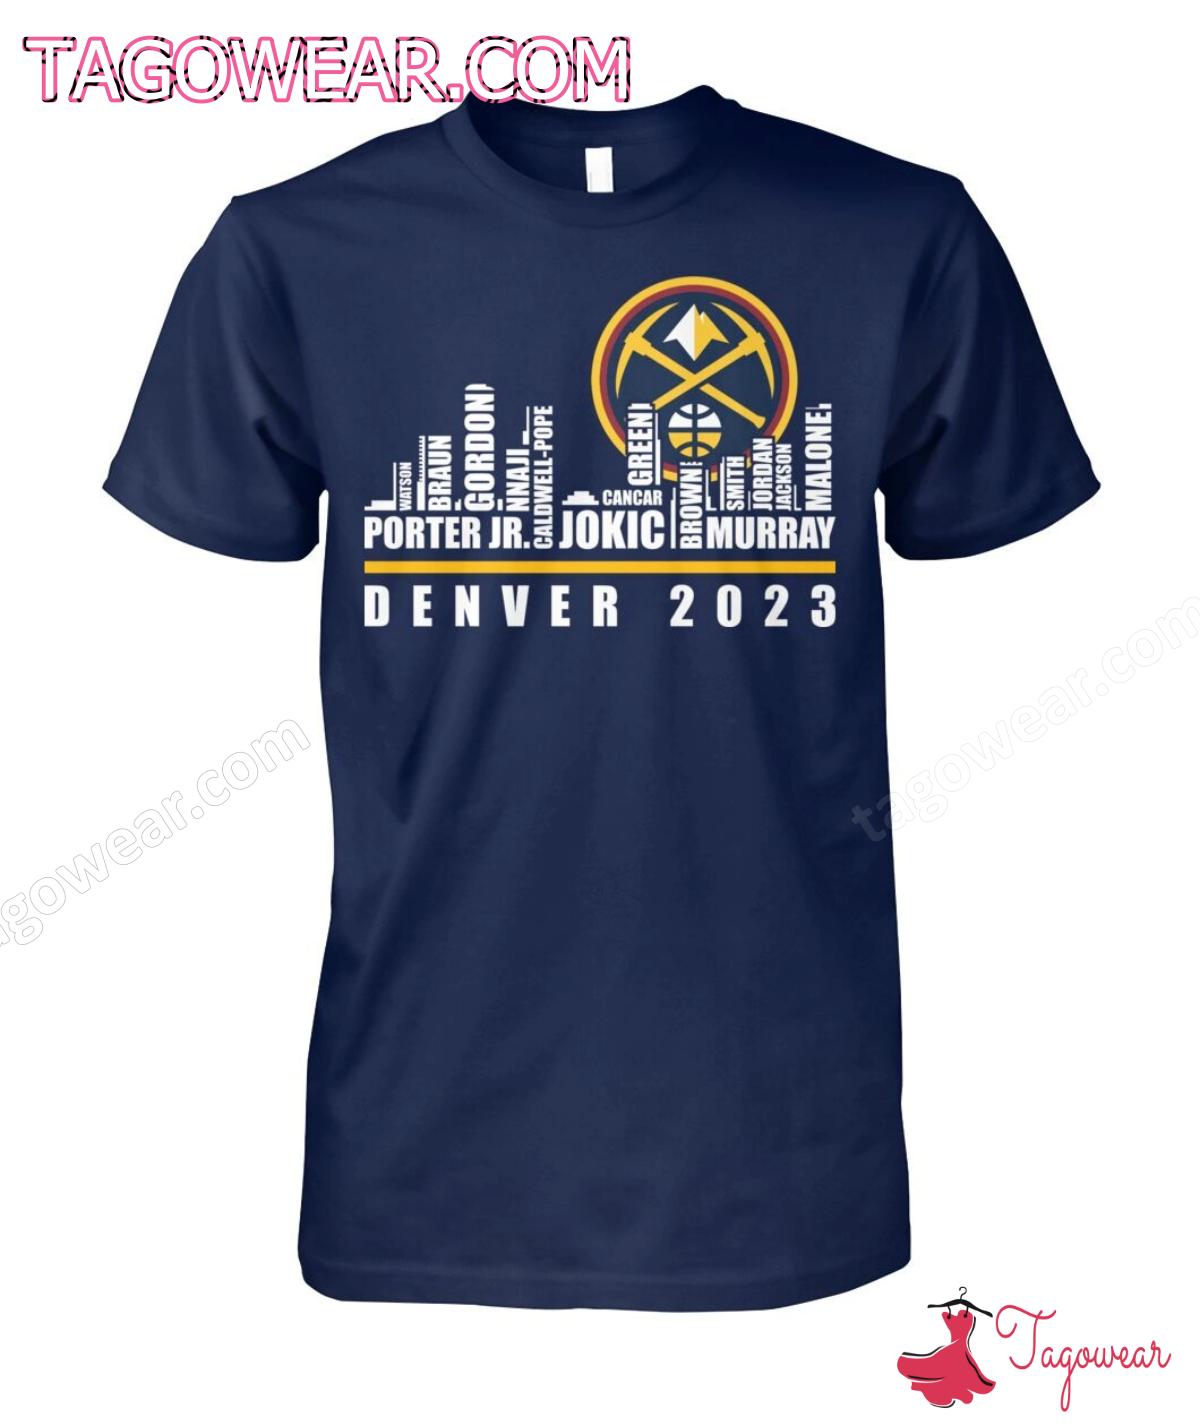 Denver Nuggets Players Denver 2023 City Shirt